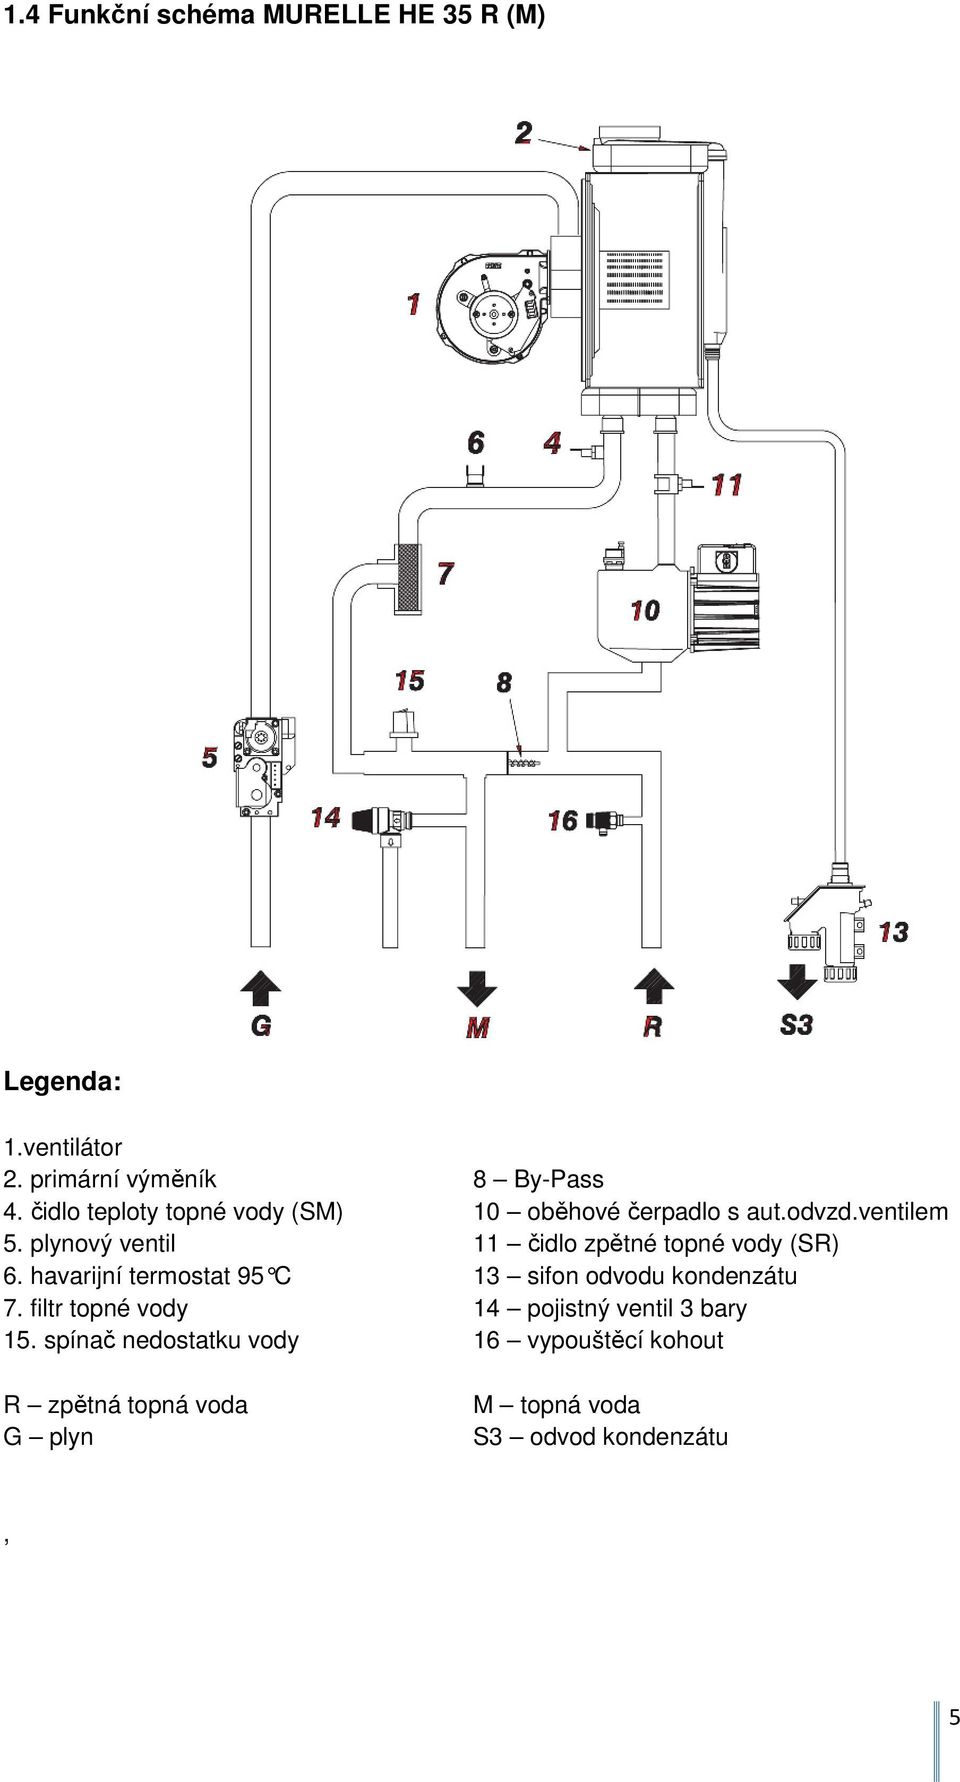 plynový ventil 11 čidlo zpětné topné vody (SR) 6. havarijní termostat 95 C 13 sifon odvodu kon denzátu 7.